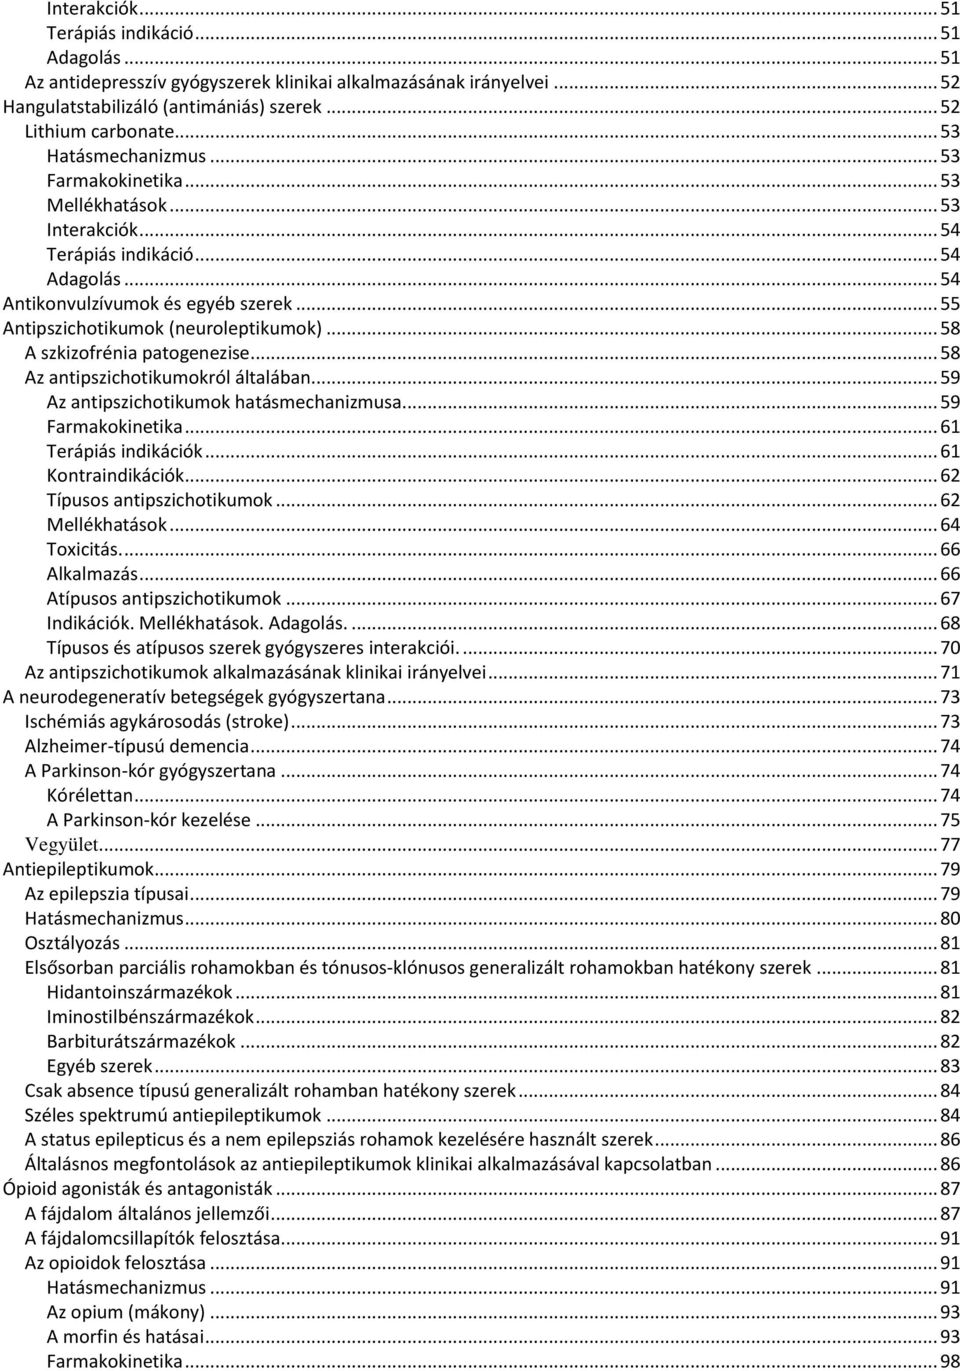 .. 55 Antipszichotikumok (neuroleptikumok)... 58 A szkizofrénia patogenezise... 58 Az antipszichotikumokról általában... 59 Az antipszichotikumok hatásmechanizmusa... 59 Farmakokinetika.